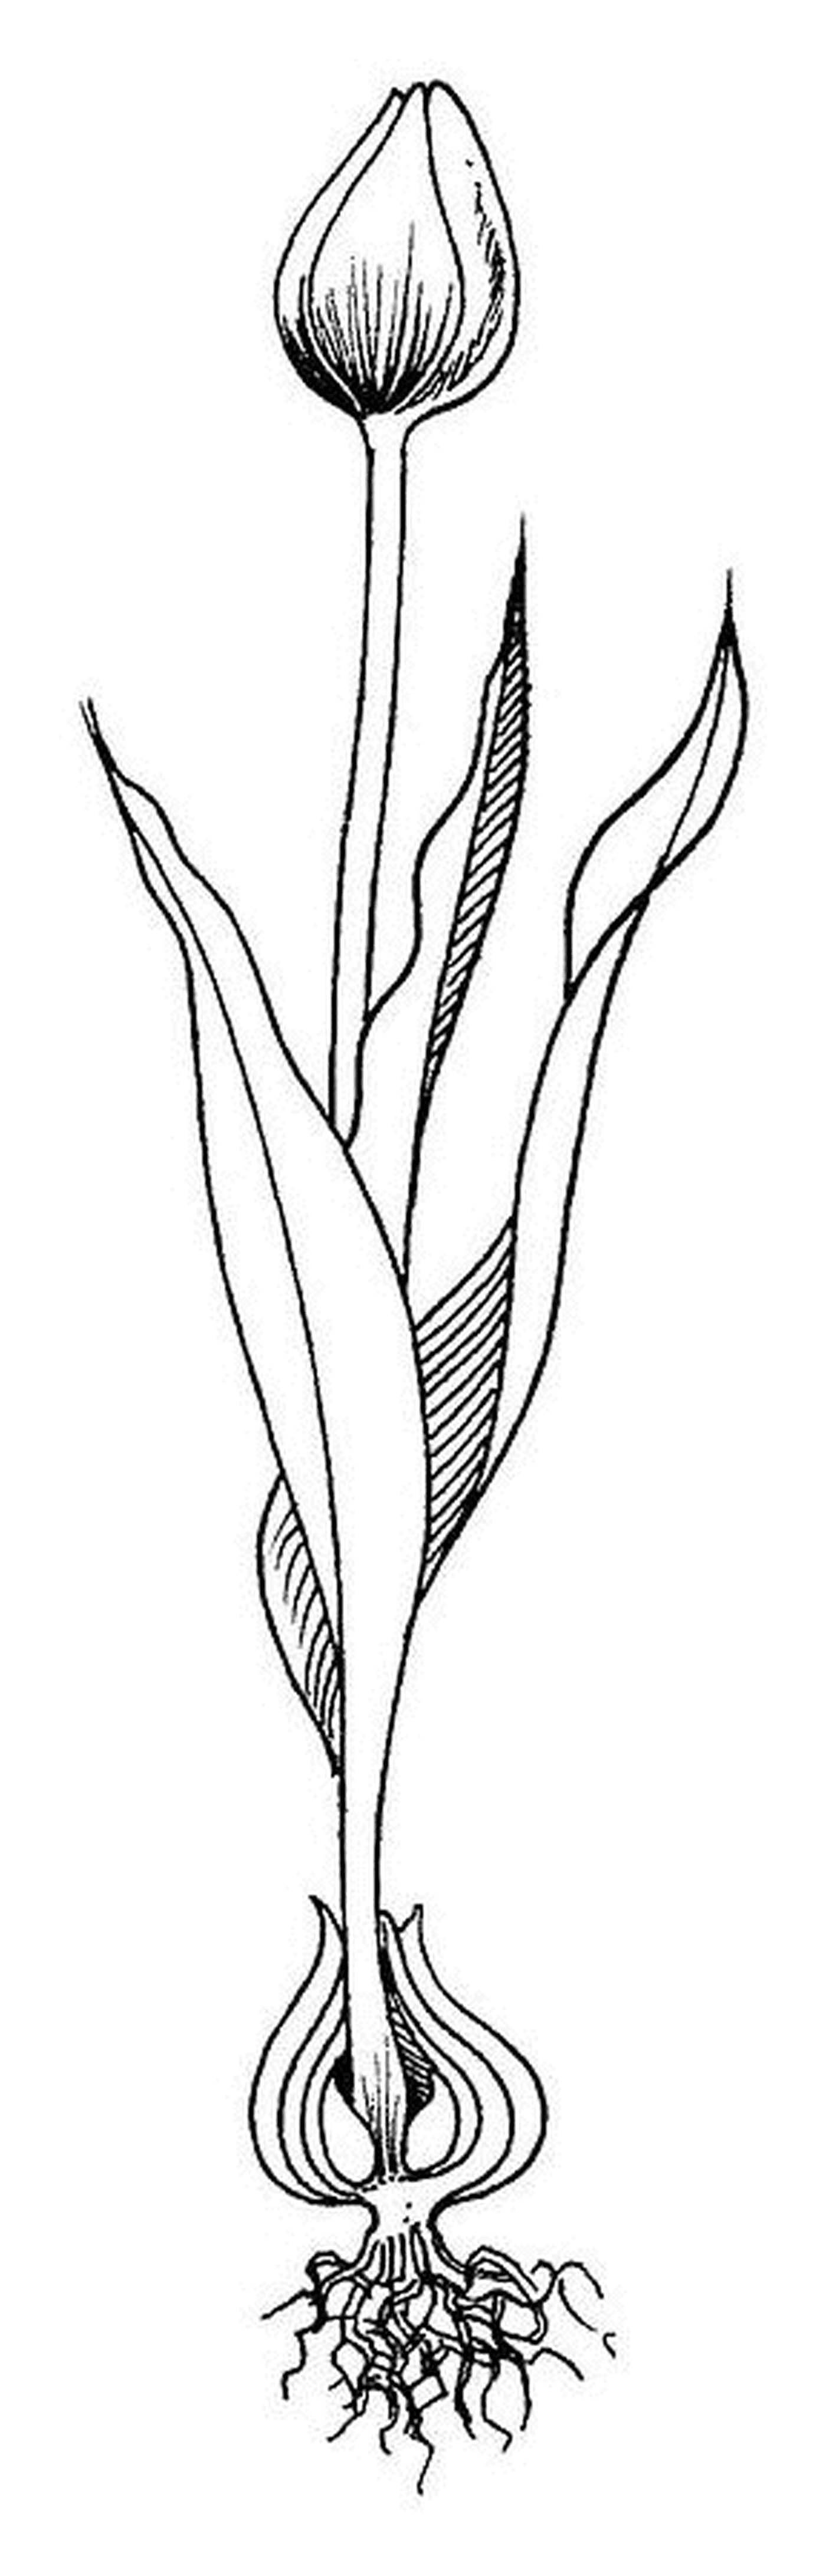  Тюльпан с кореньом закрыт на линии 